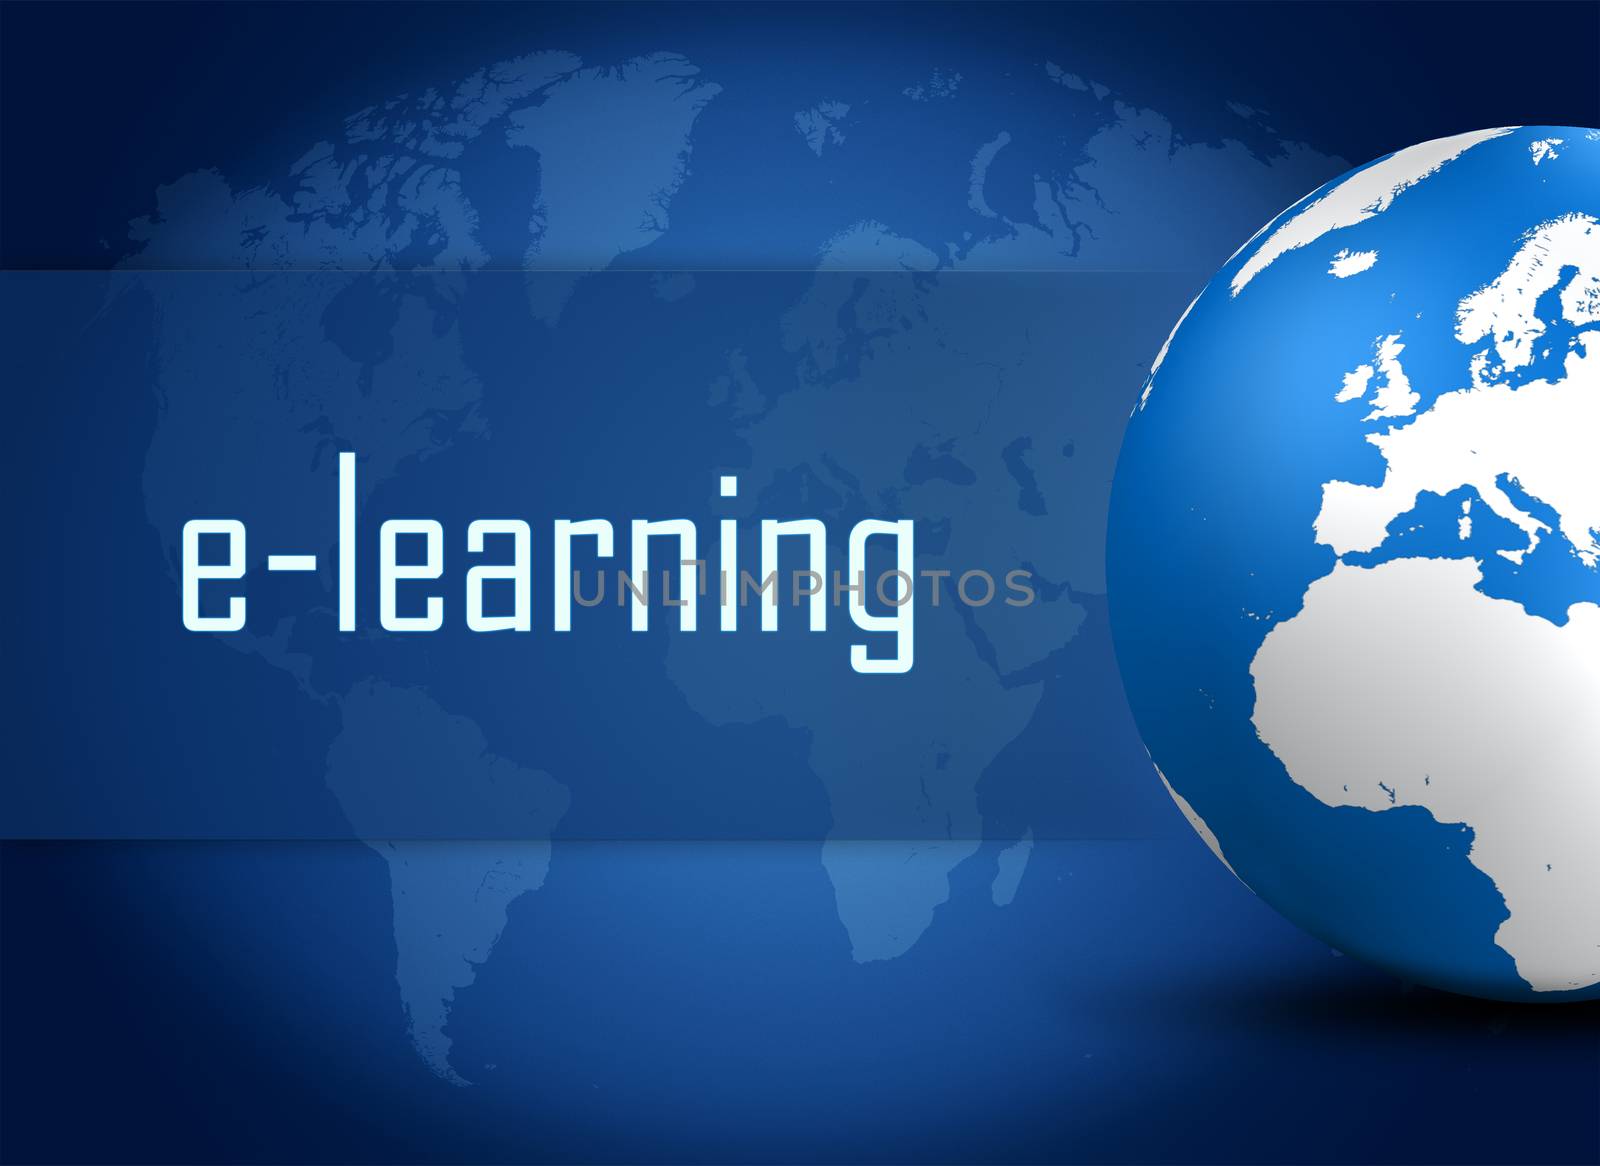 E-learning by Mazirama